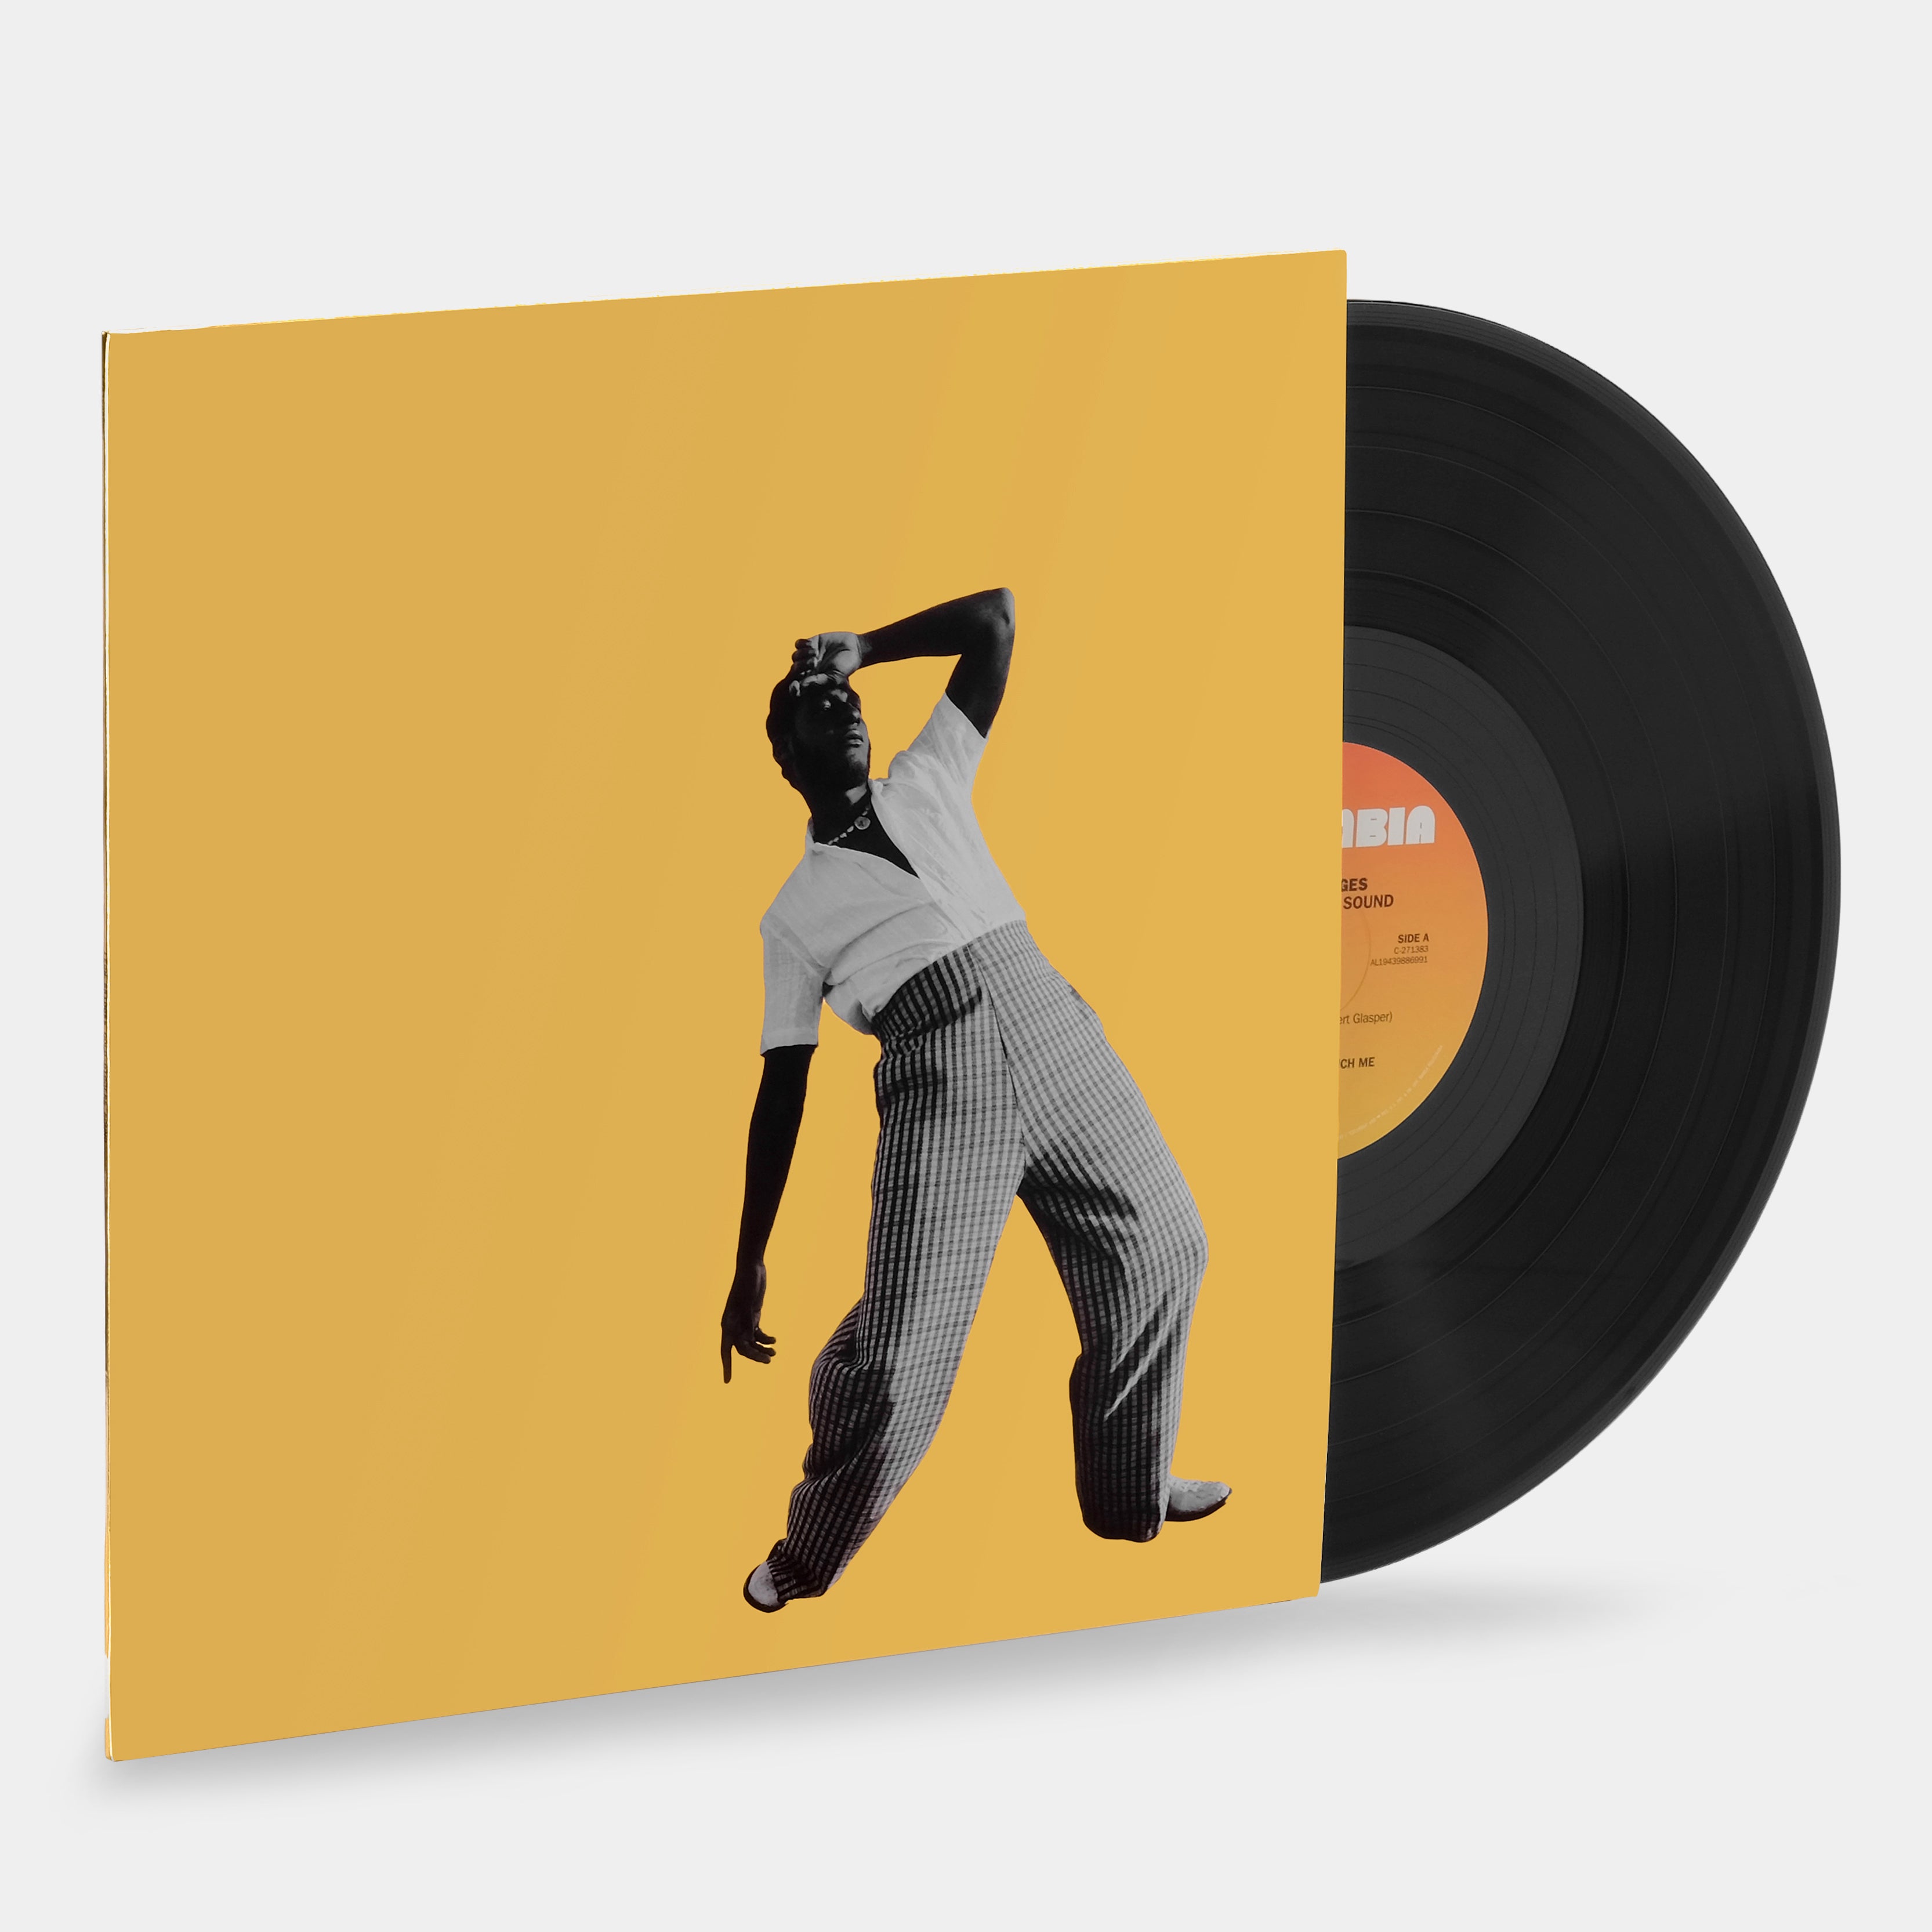 Leon Bridges - Gold-Diggers Sound LP Vinyl Record